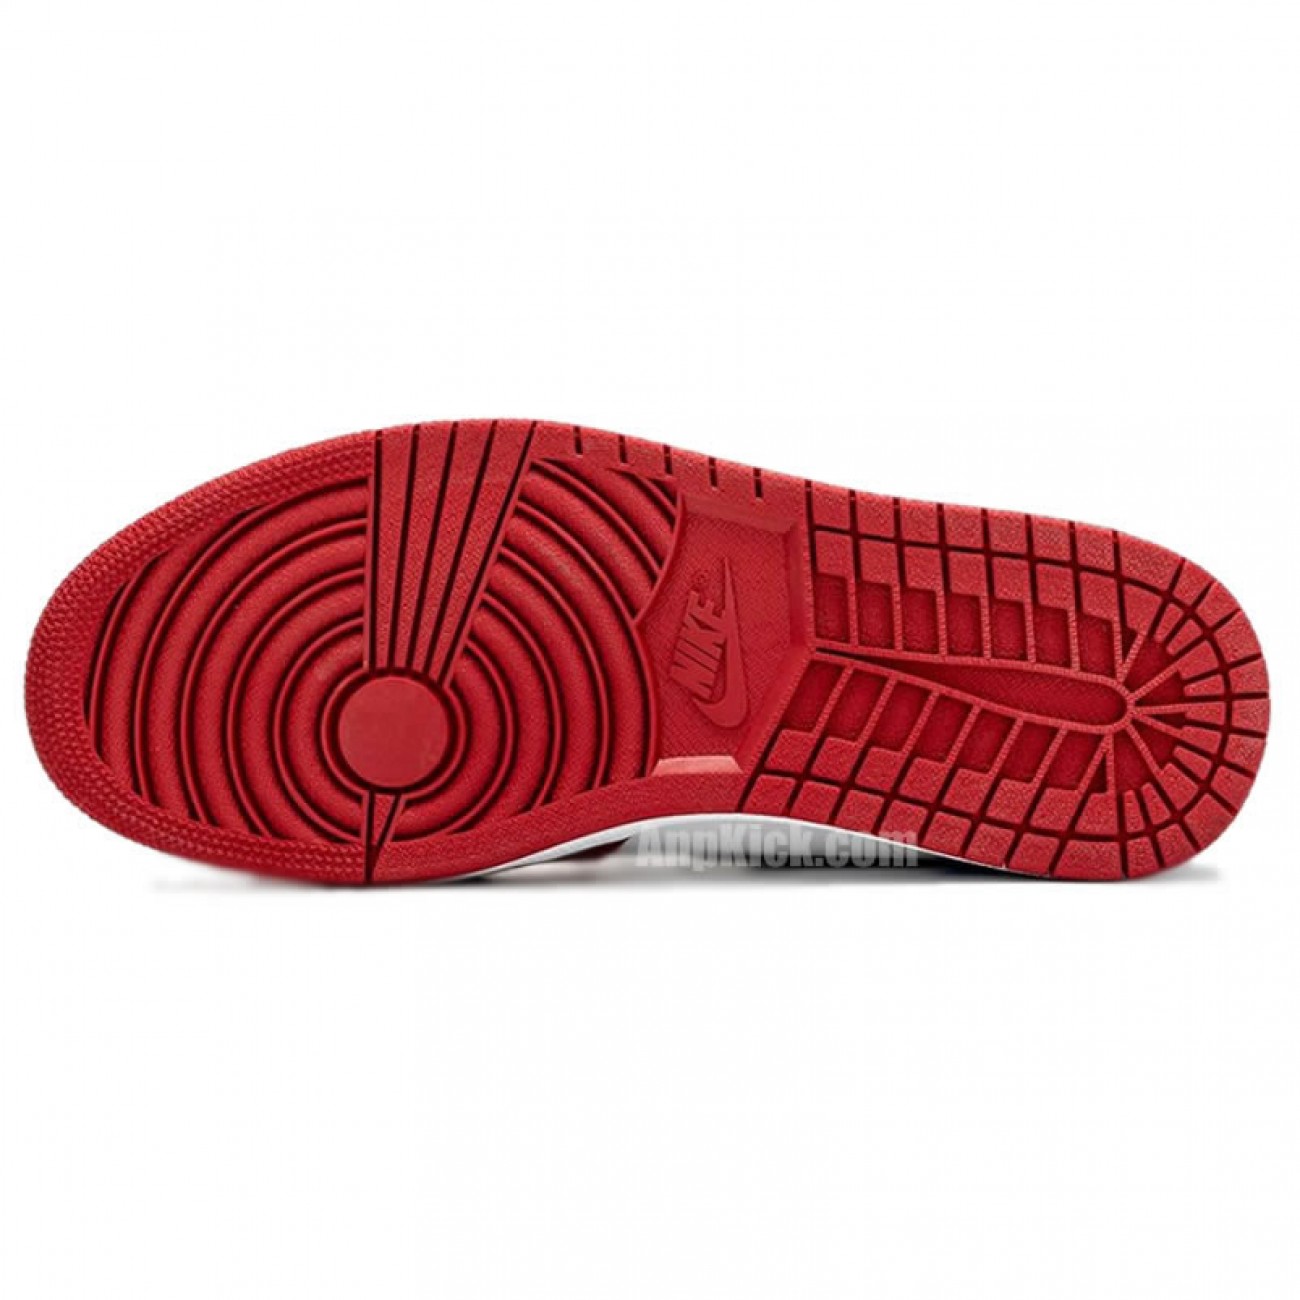 Air Jordan 1 High OG "Fearless" Men's Women's Shoes On Feet Release Date CK5666-100